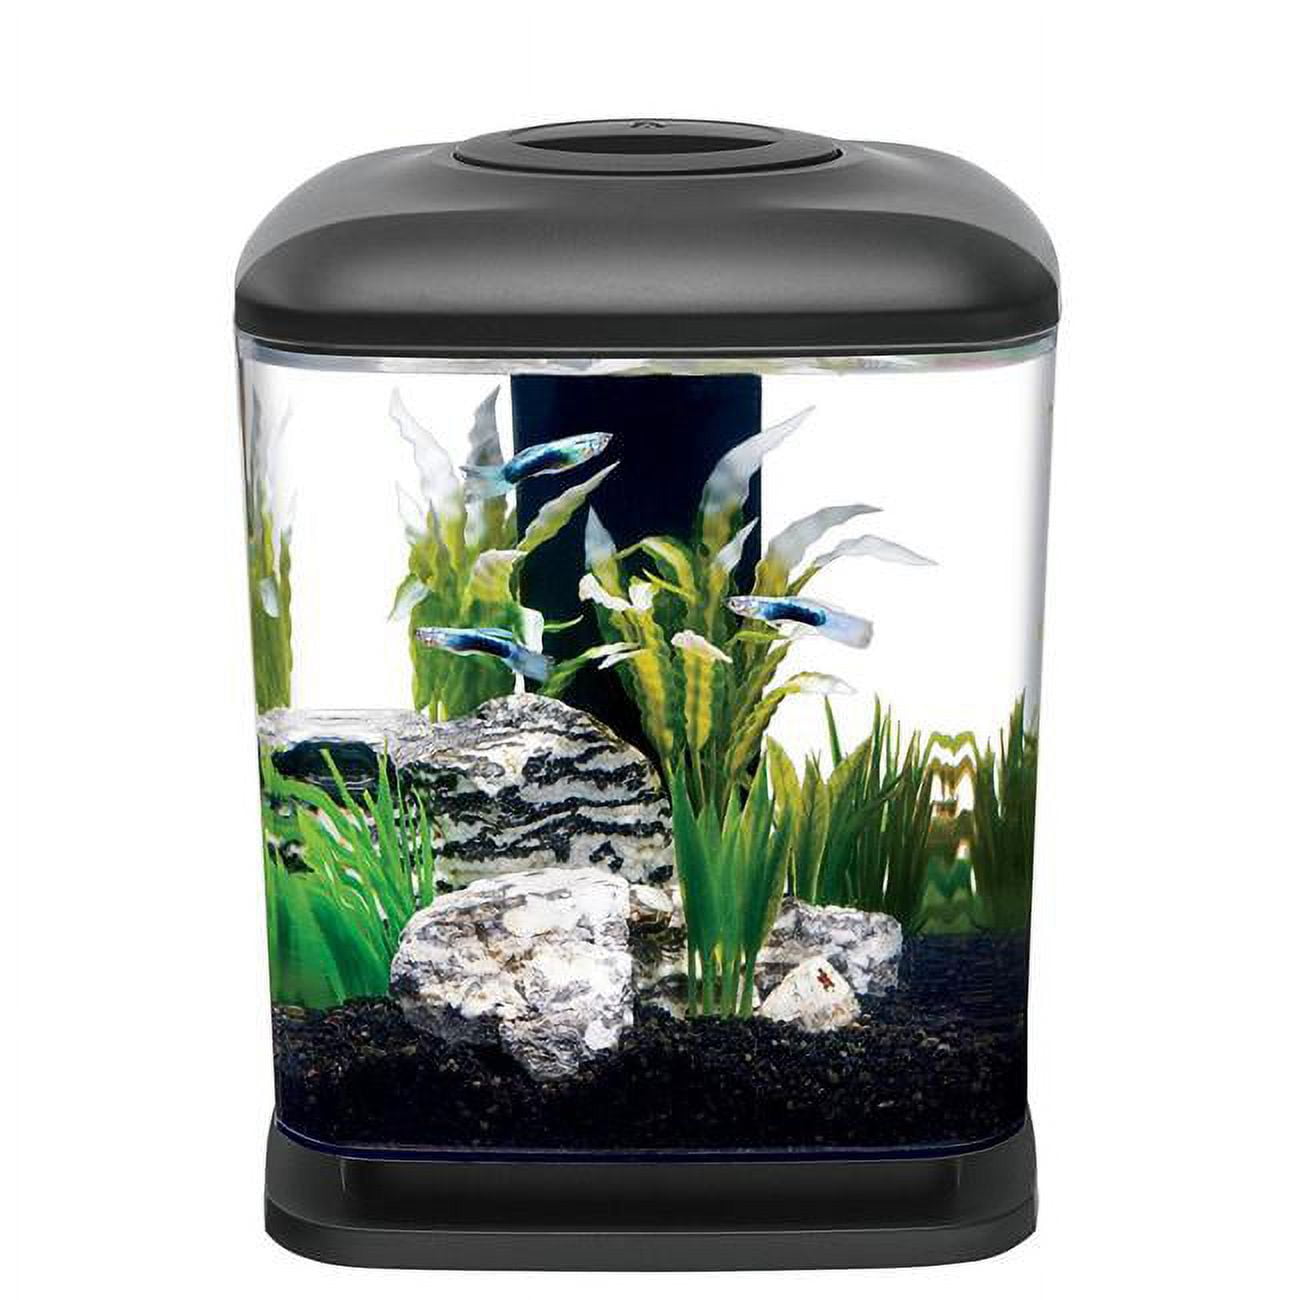 Aqueon Mini Cube Led Aquarium Kit - Black - 1.6 Gallon 